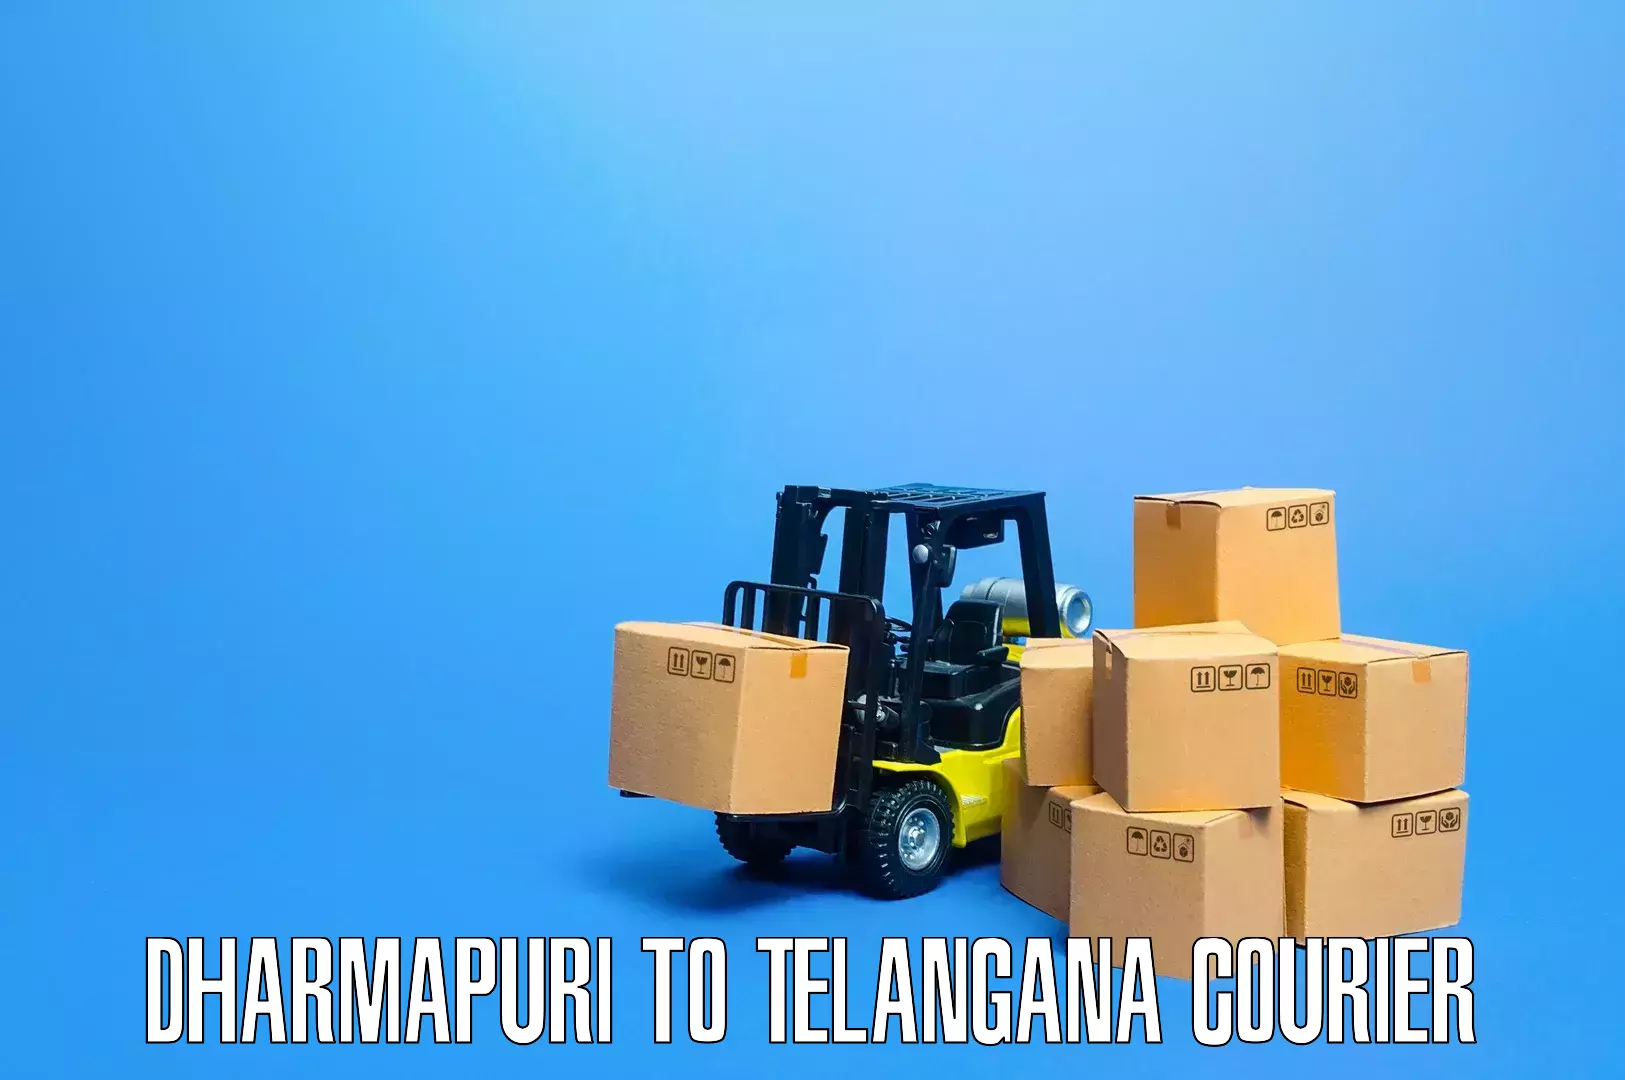 Furniture logistics in Dharmapuri to Alair